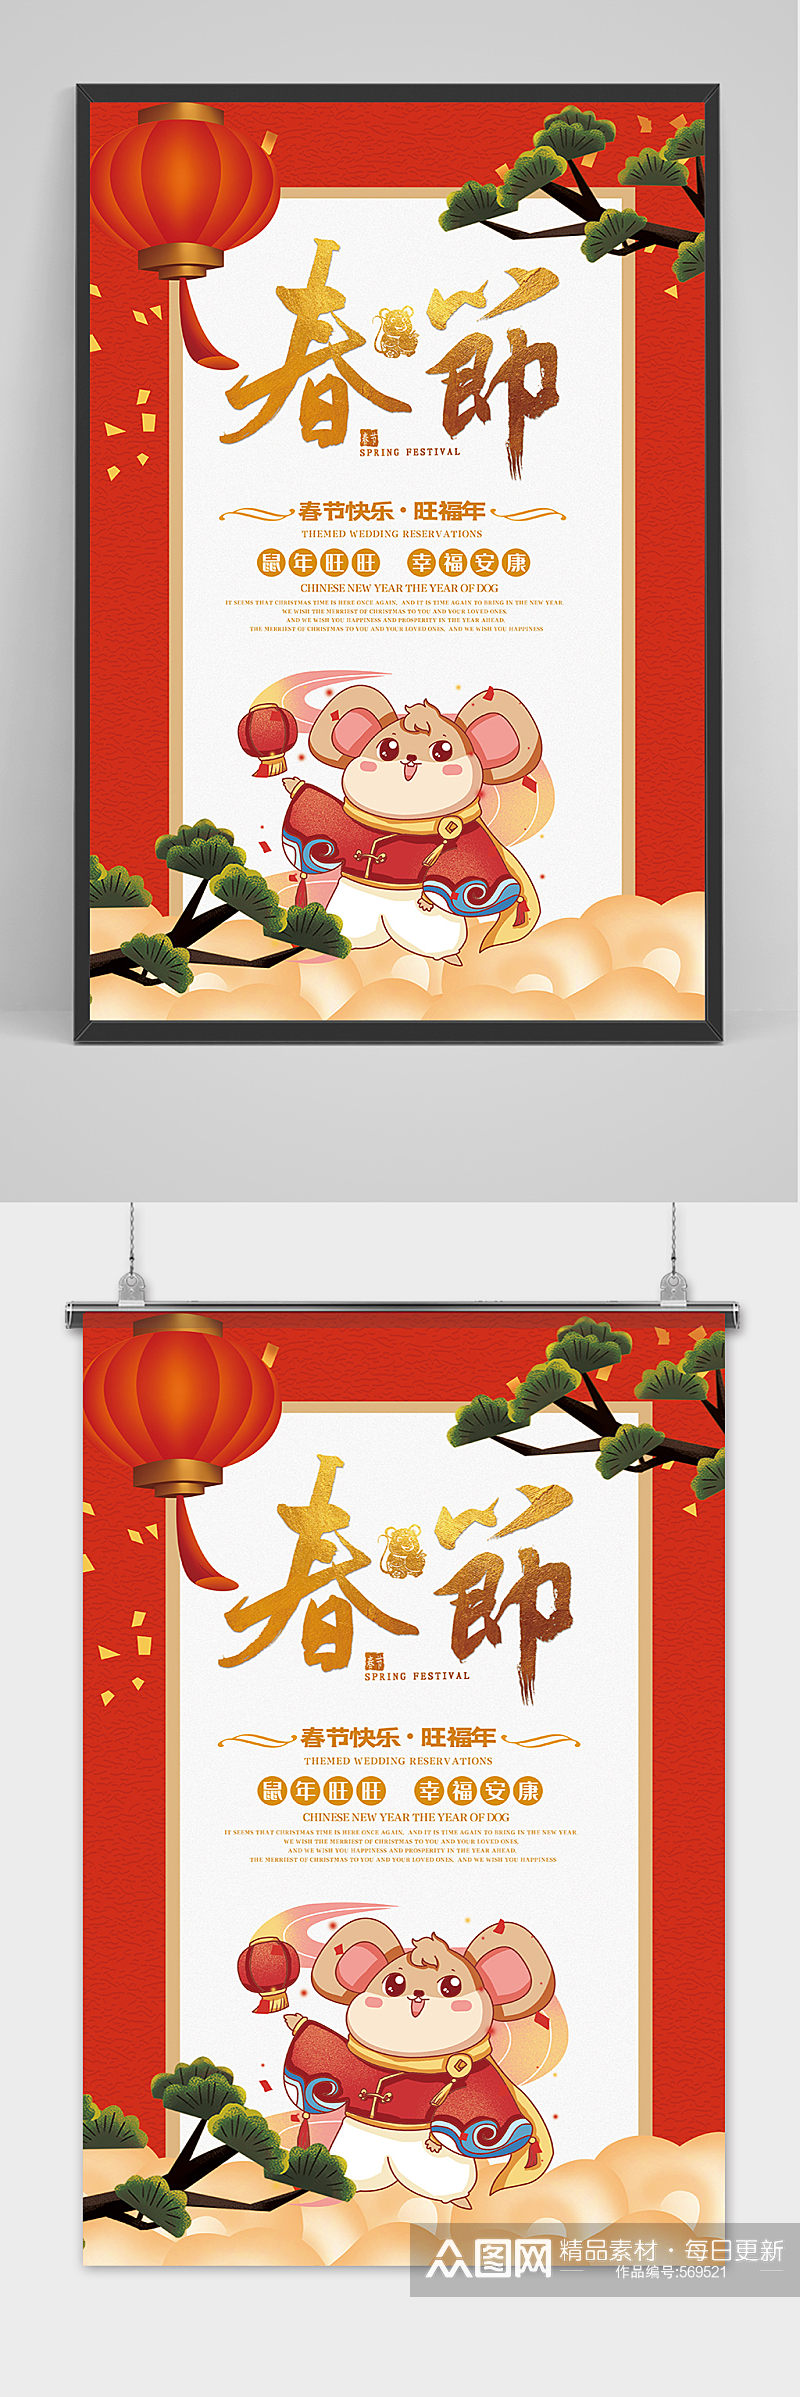 鼠年新春黄金春节海报设计素材